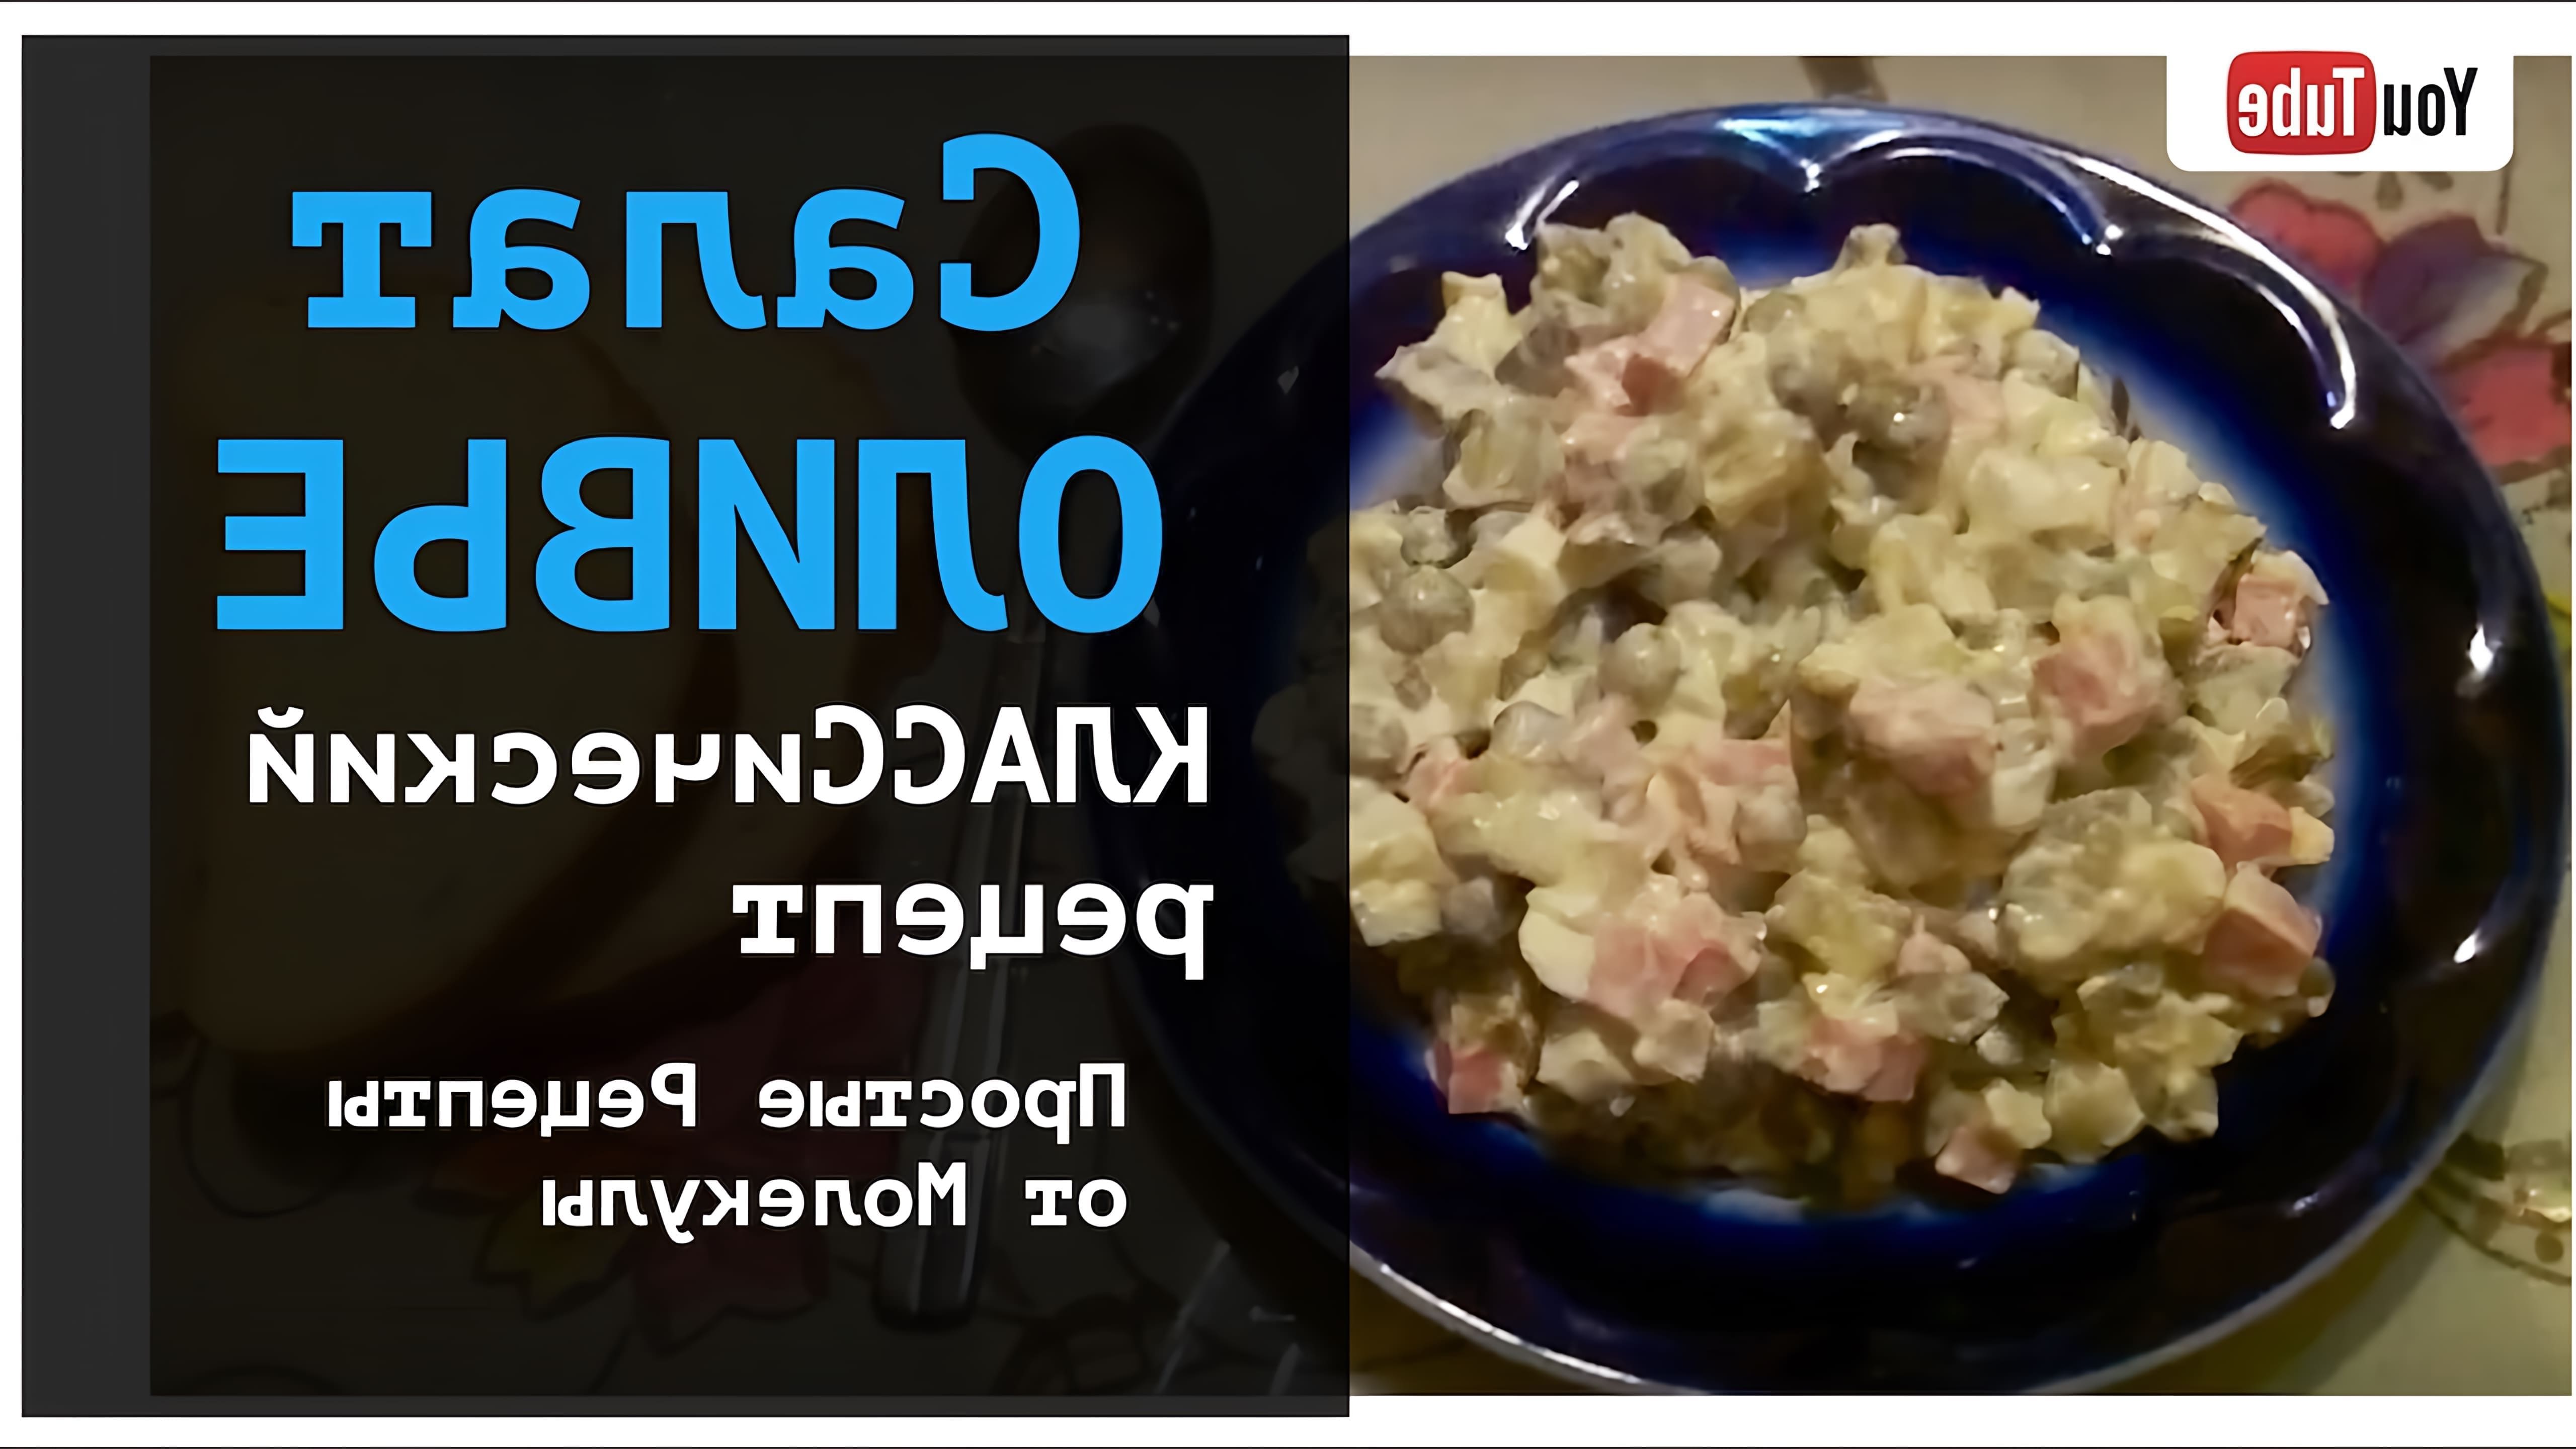 В данном видео демонстрируется рецепт классического салата Оливье с колбасой и соленым огурцом